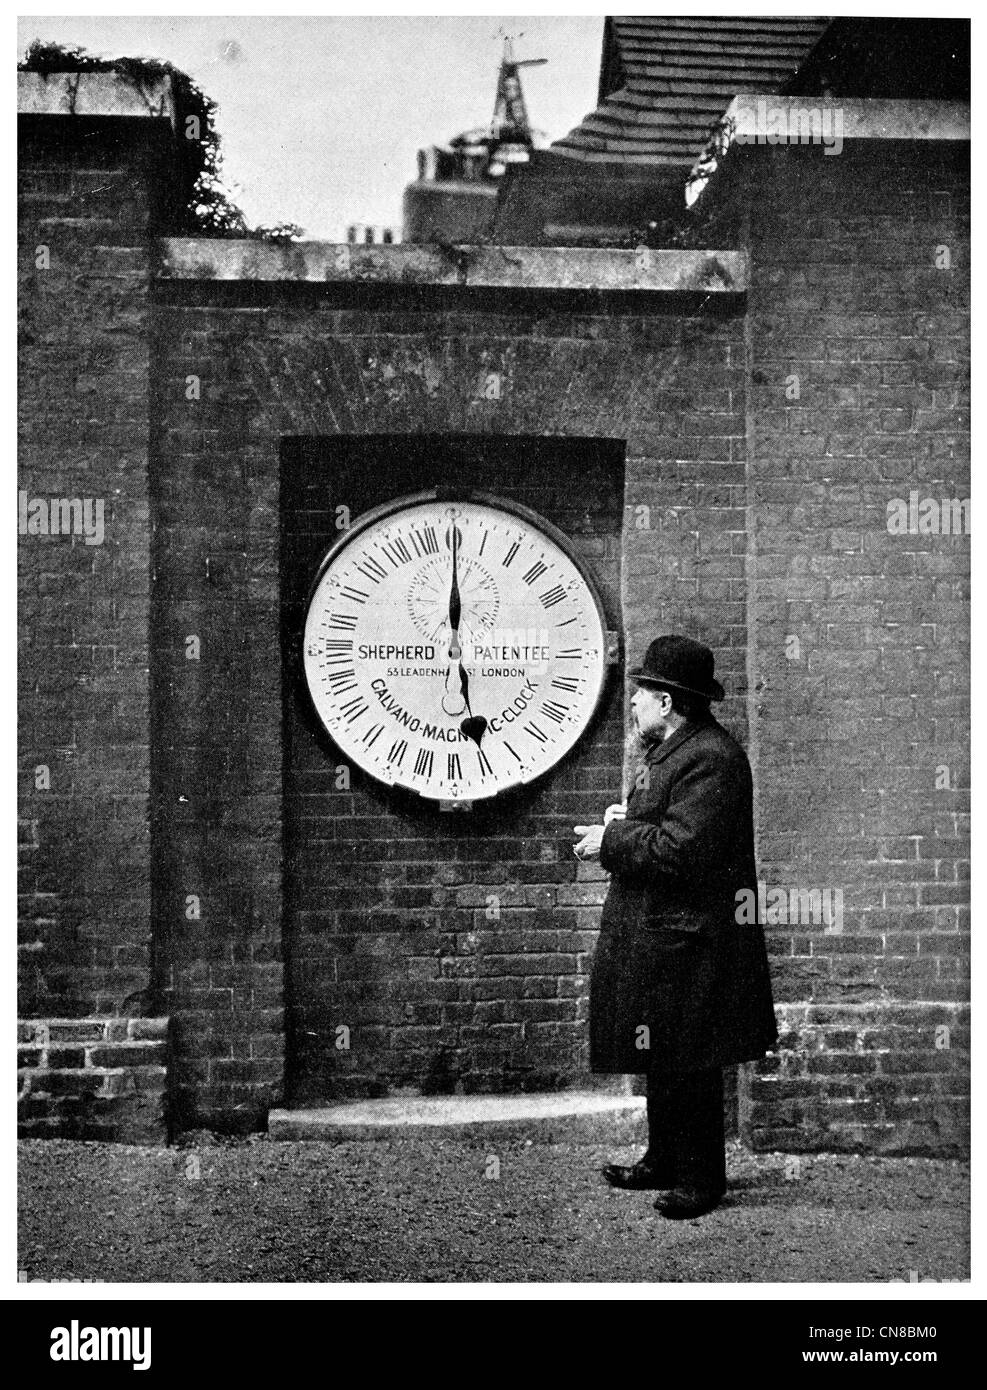 D'abord publié 1914 Heures 24 Shepherd Gate réveil, l'Observatoire Royal de Greenwich, Londres, Royaume-Uni Banque D'Images